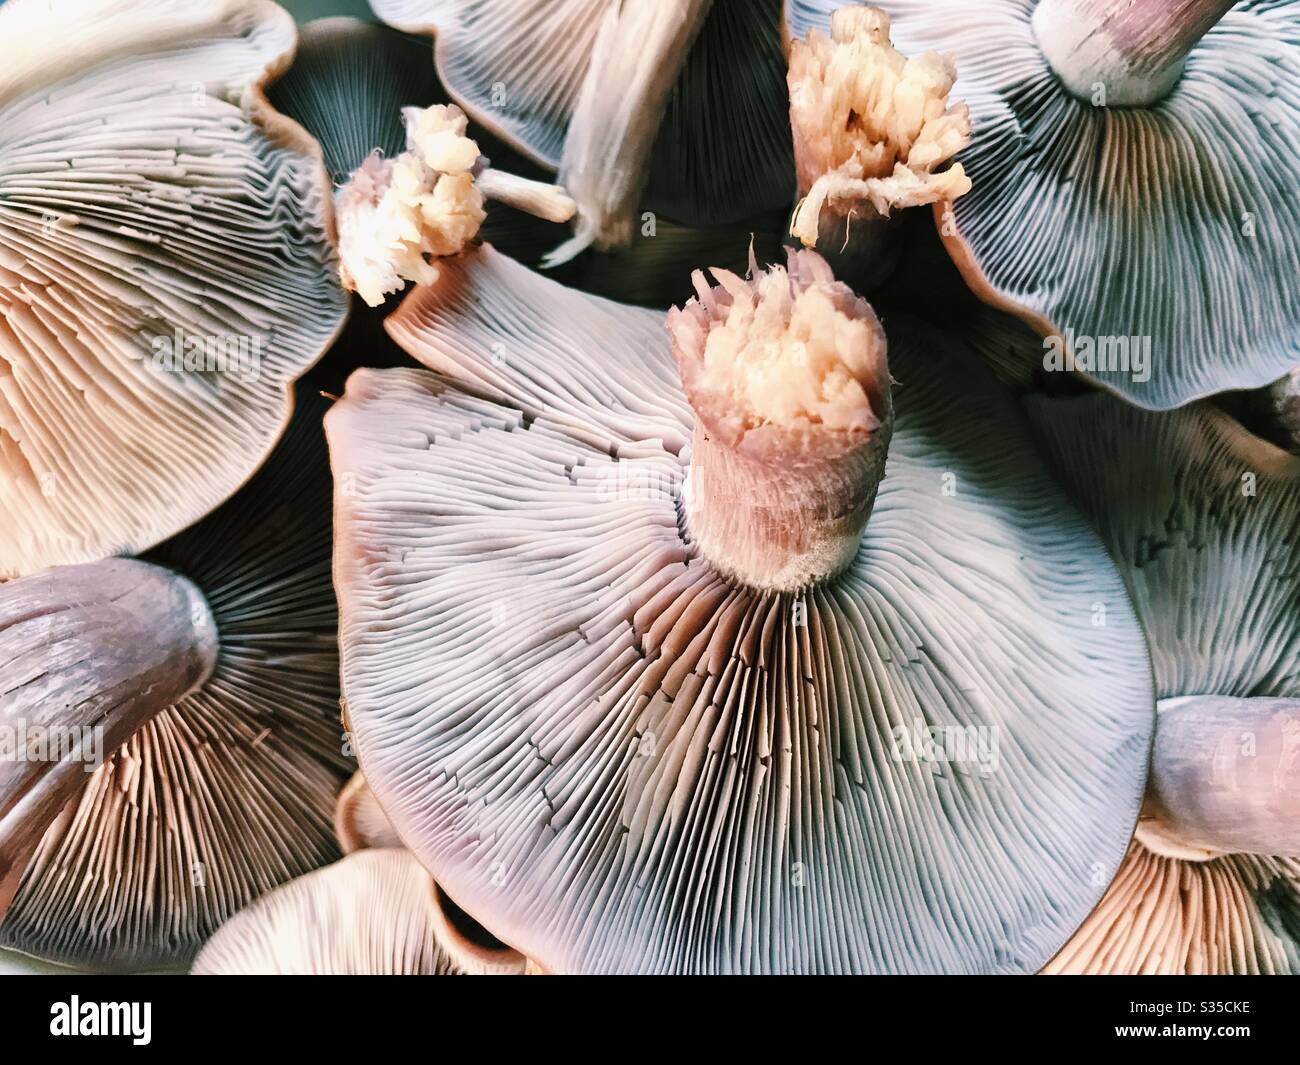 Cosecha de hongos de madera (Clitocybe nuda) de Northumberland, Inglaterra. Ocasionalmente también conocido como Lepista nuda, estos son un hongo comestible nativo de Europa y Norteamérica. Foto de stock